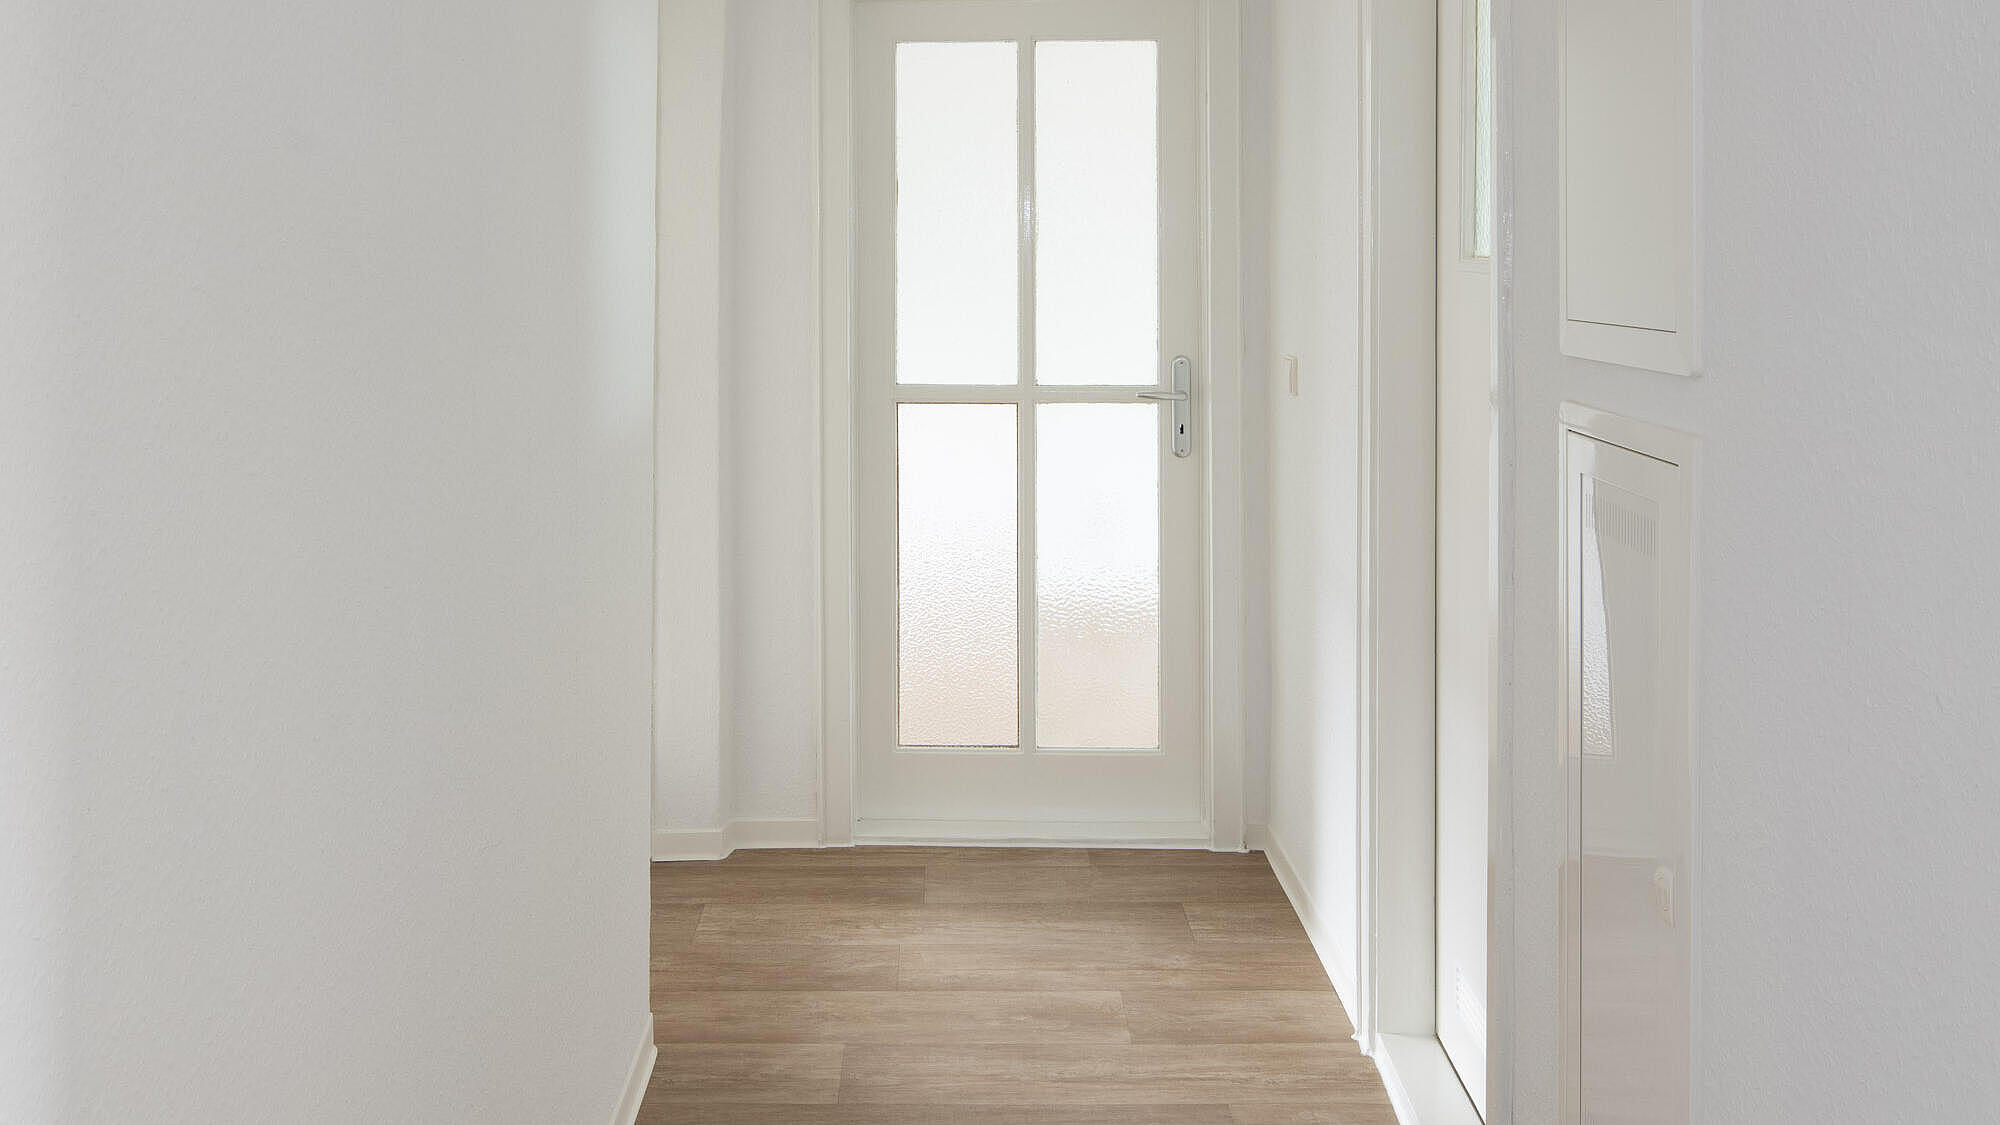 Das Bild zeigt eine modernisierte Wohnung: Ein Flur mit Holzboden, mit einer Glastür am Ende, weiße Wände, einer rechts abgehenden, weißen Zimmertür und weißen Klappen zum Stromkasten